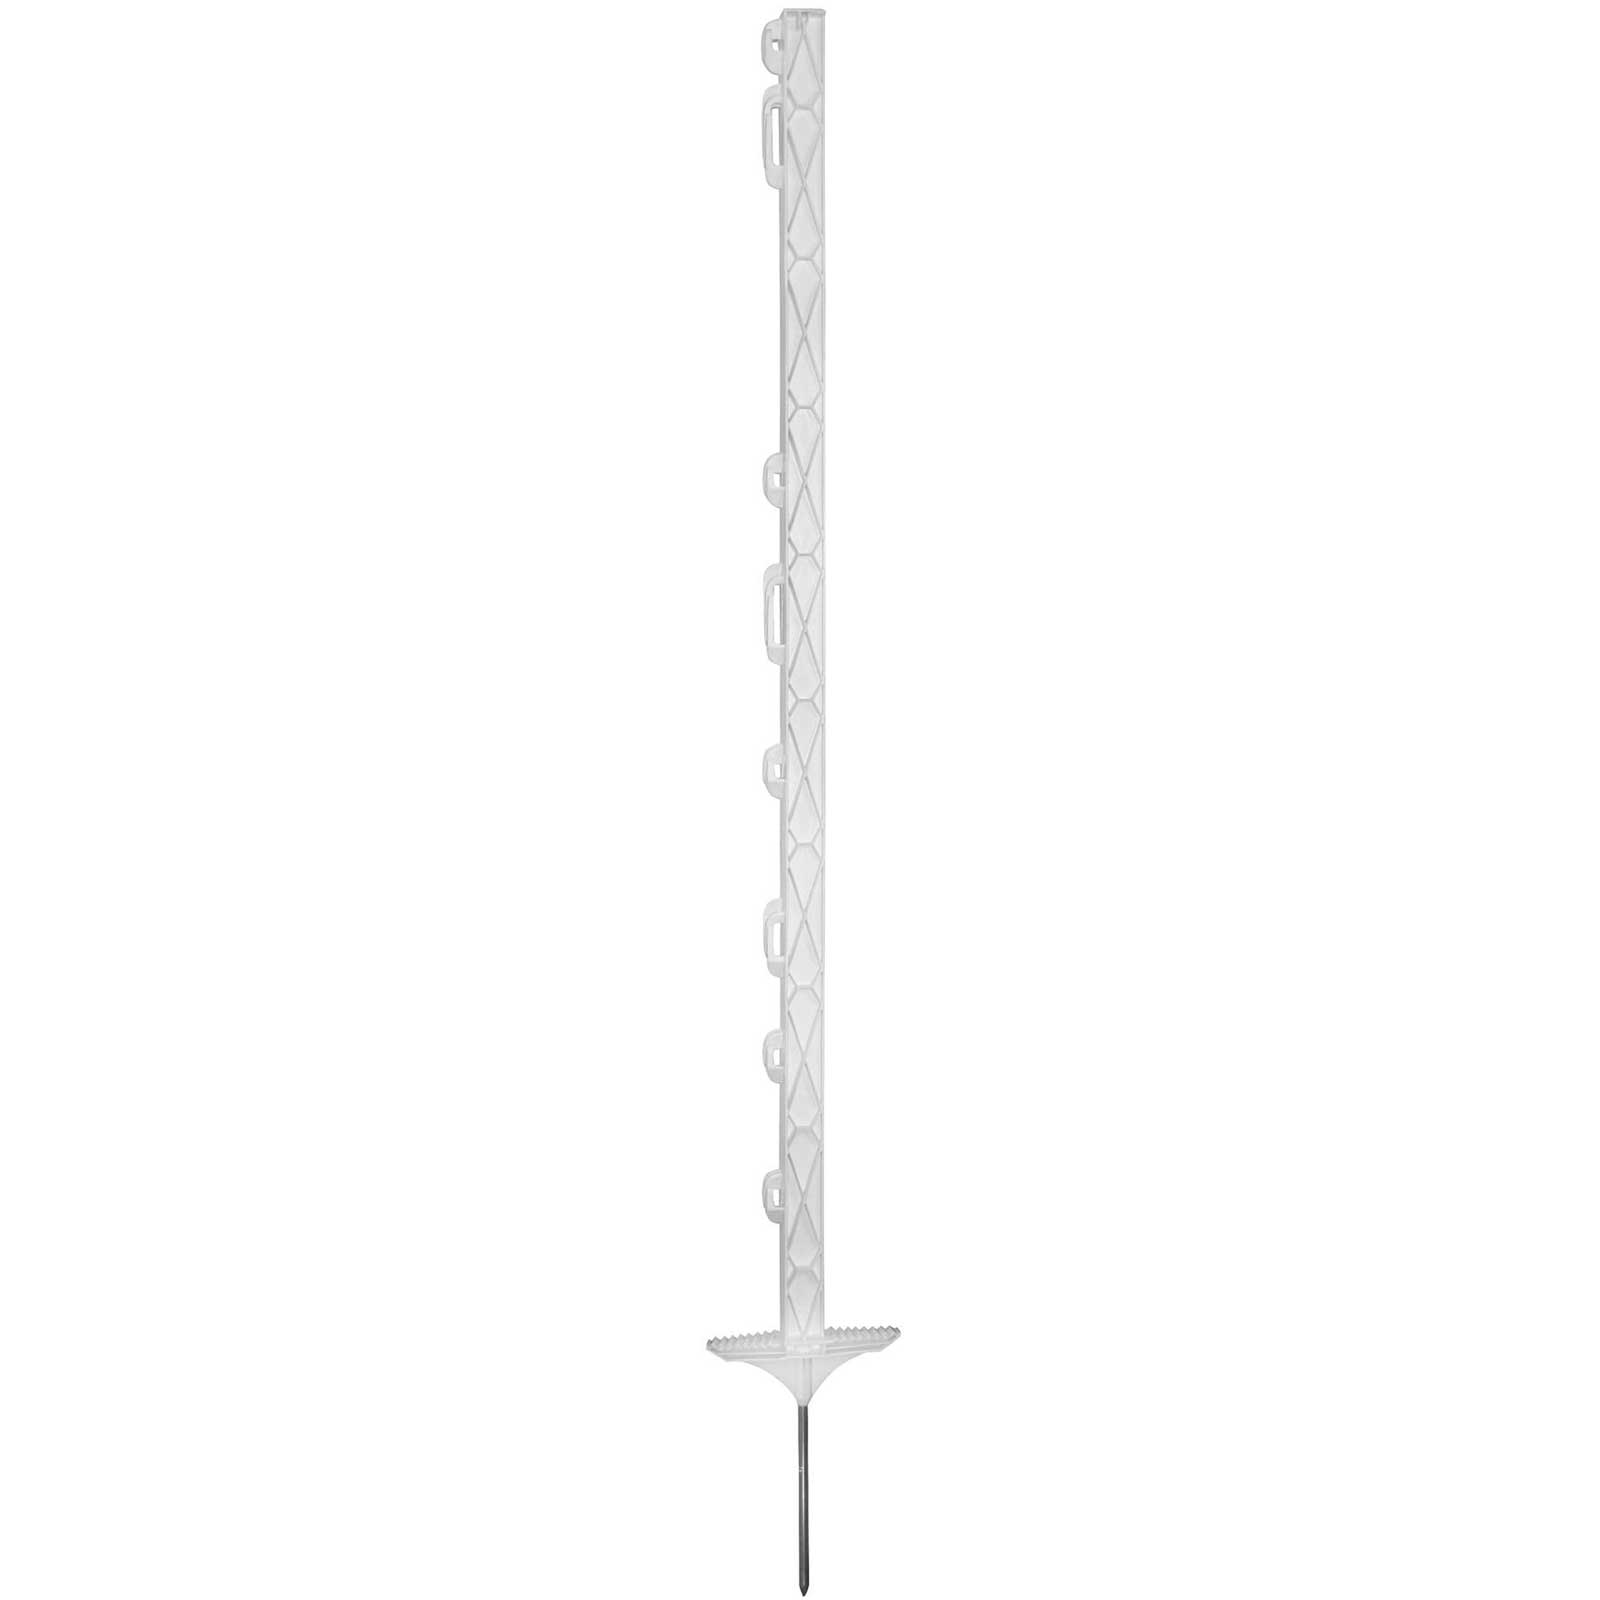 Kunststoffpfahl Titan 110 cm, Doppeltritt, weiß (5er Pack)